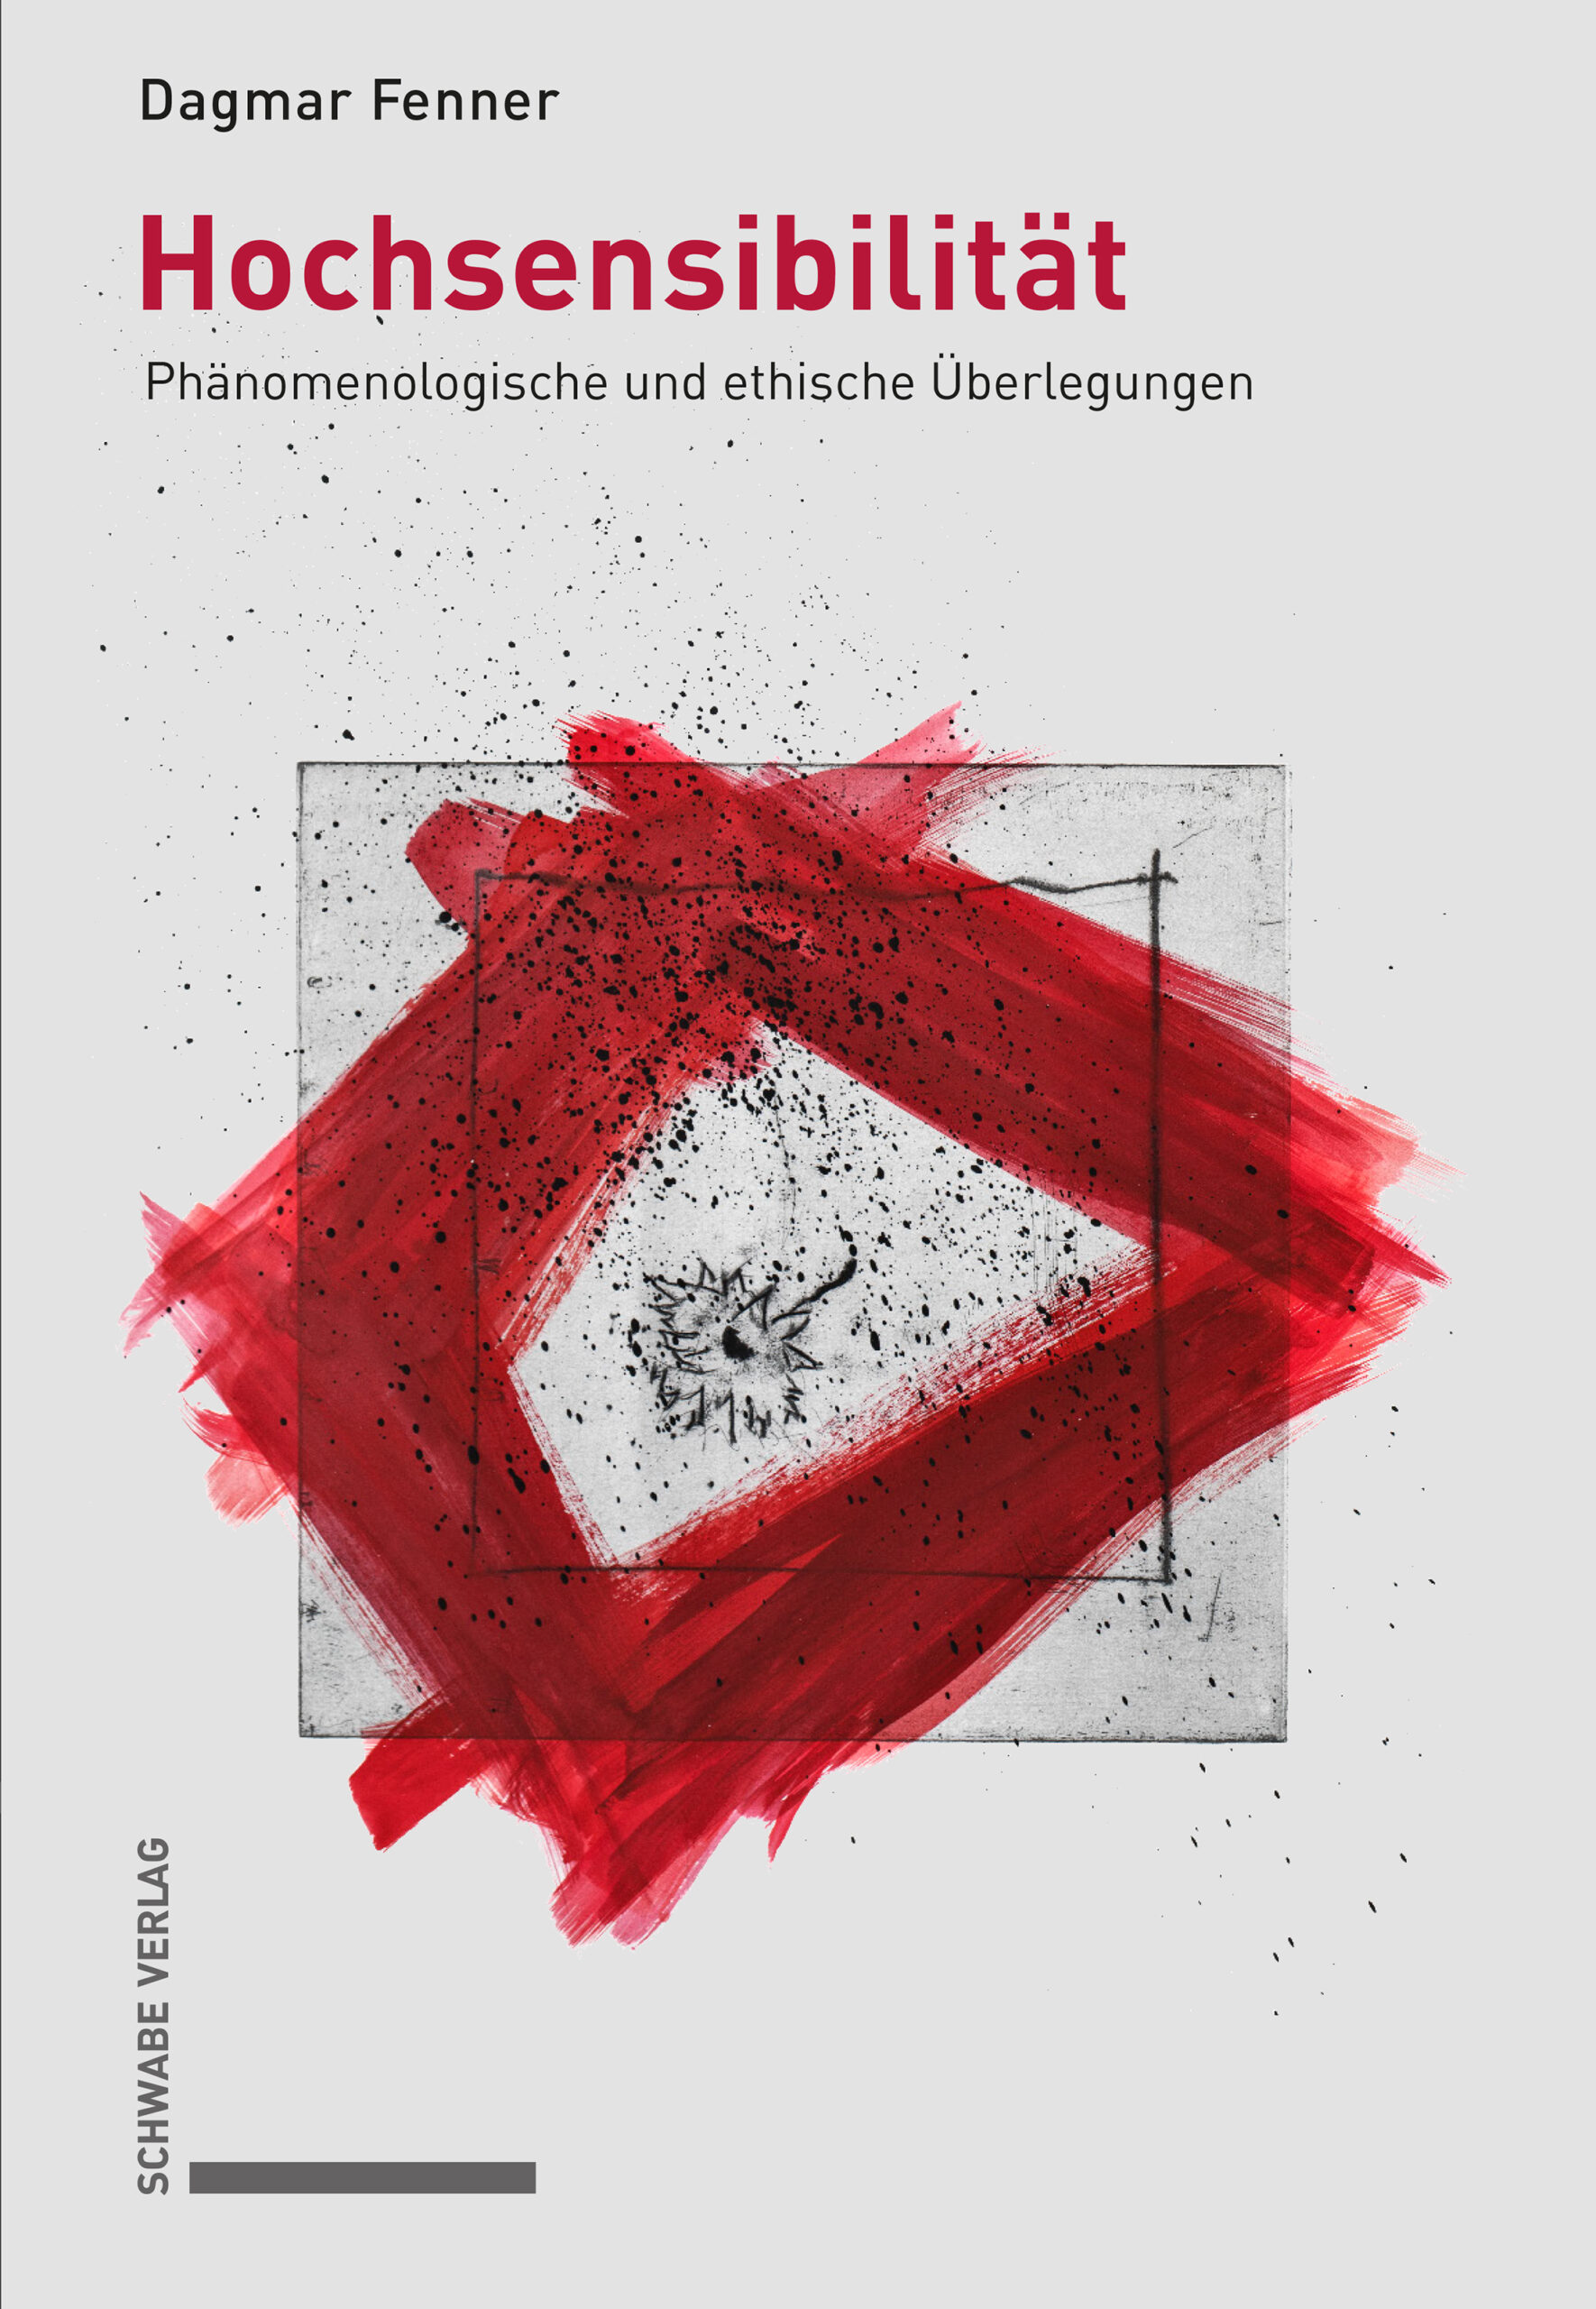 Coverbild von Dagmar Fenner: Hochsensibilität ©Schwabeverlag